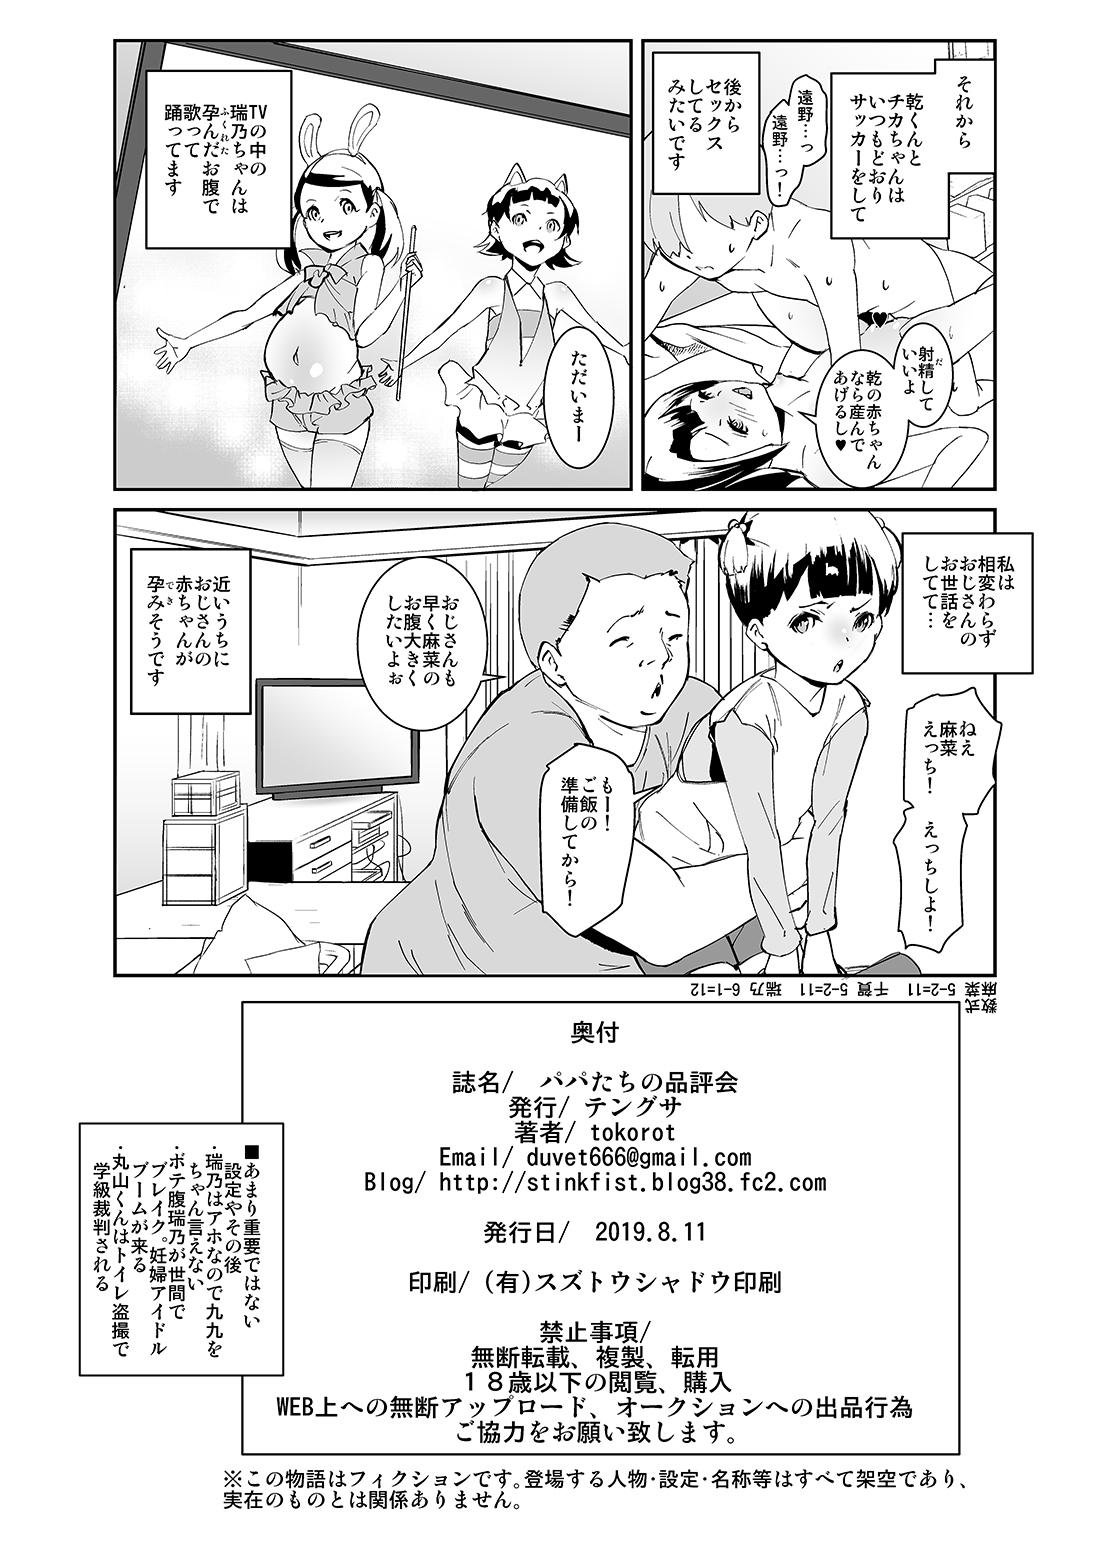 Best Blowjobs Ever Papa-tachi no Hinpyoukai - Original Wanking - Page 33